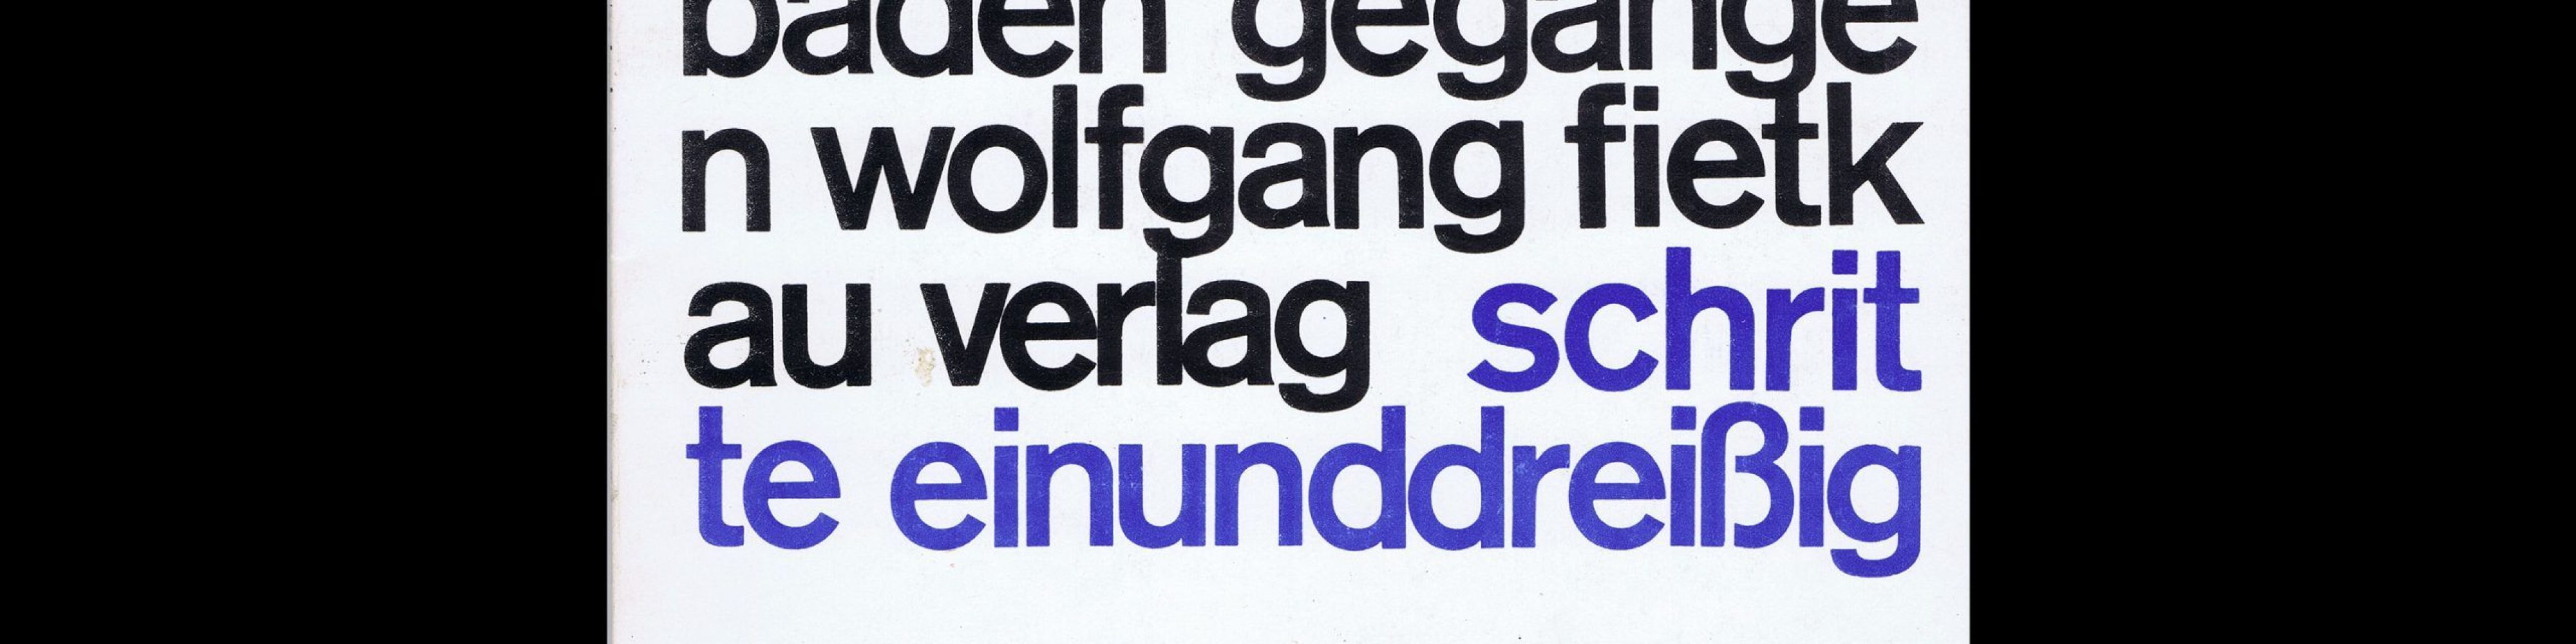 Margot Schroeder, Die Angst ist baden gegangen, Wolfgang Fietkau Verlag, 1979. Designed by Christian Chruxin